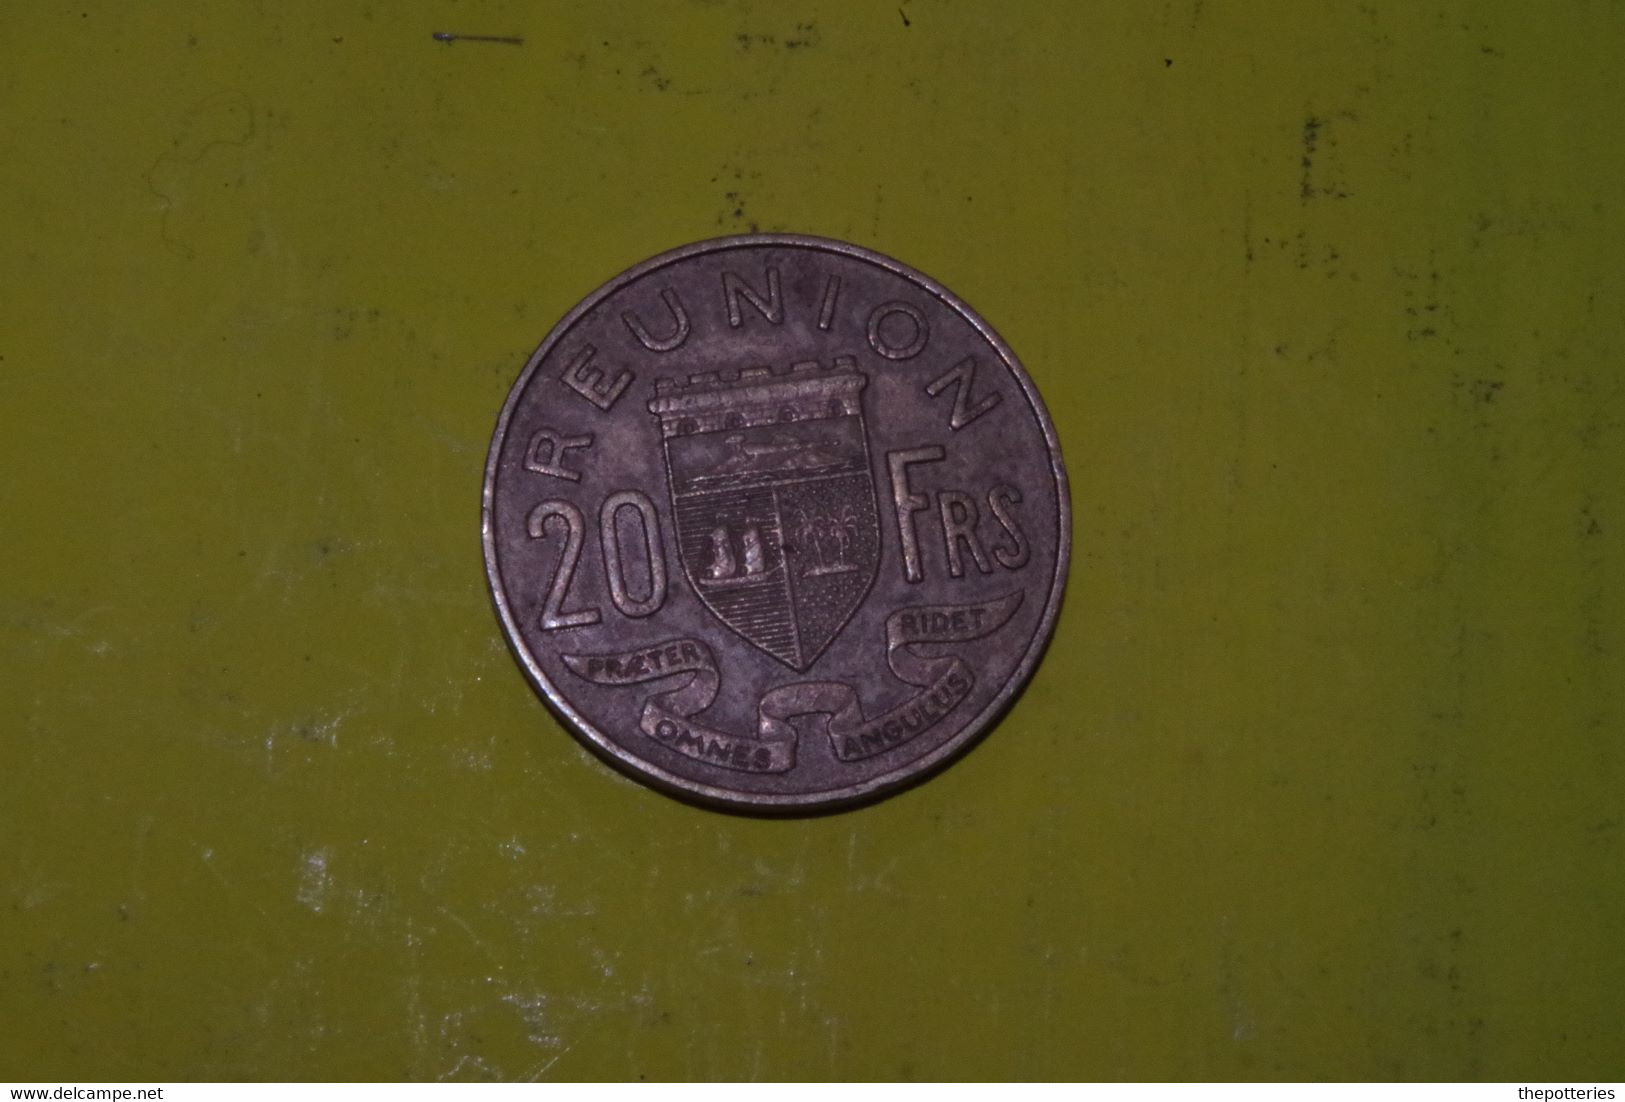 P1-026 Coin Piece Monnaie Money Pièce 20 F Ile De La REUNION 1964 CFA Mariane Bonnet Phrygien  L Bazor  Blason St Denis - Réunion